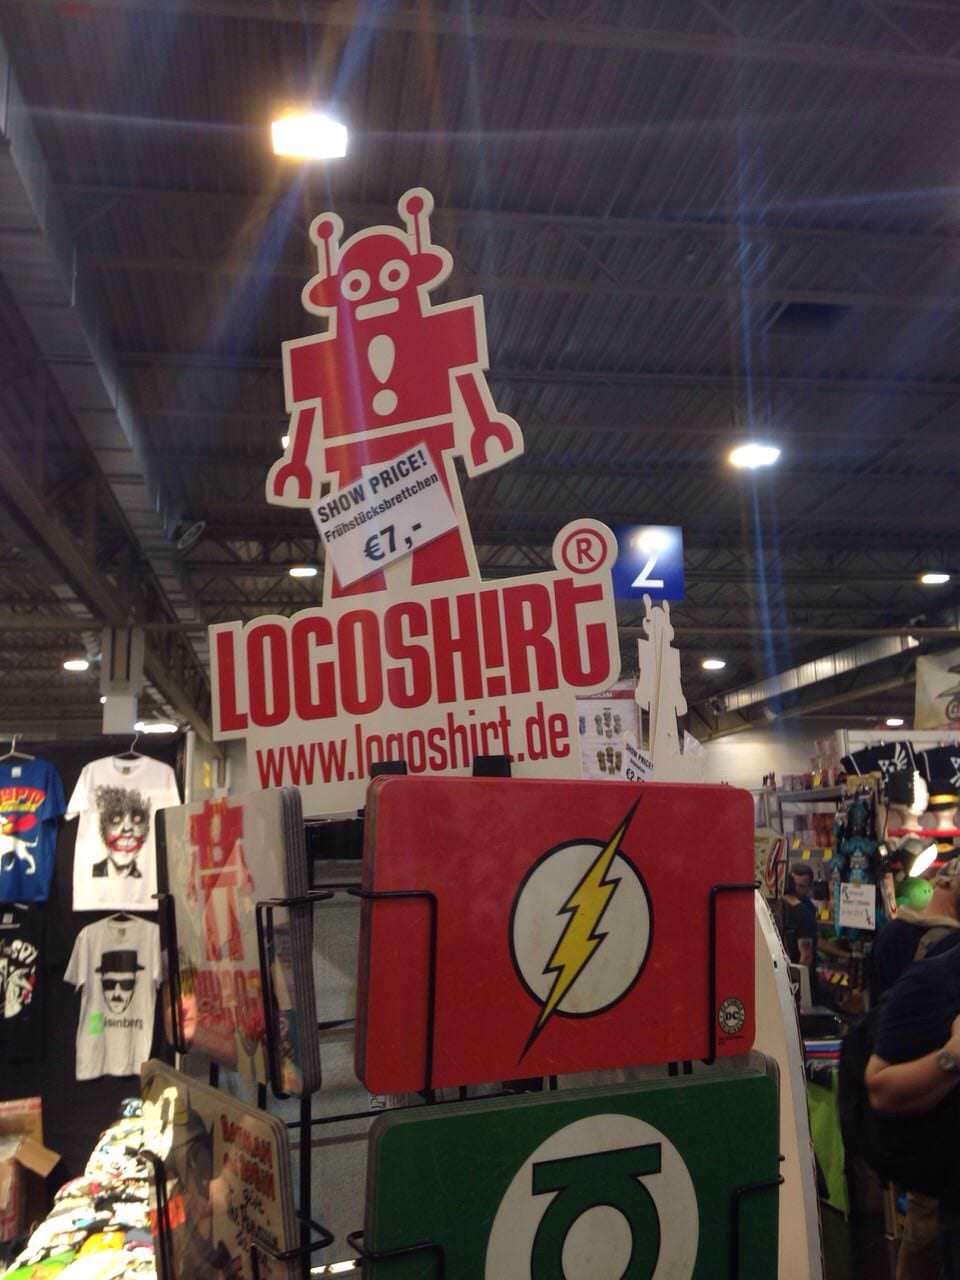 Logoshirt-Shop auf der Spielemesse 2014